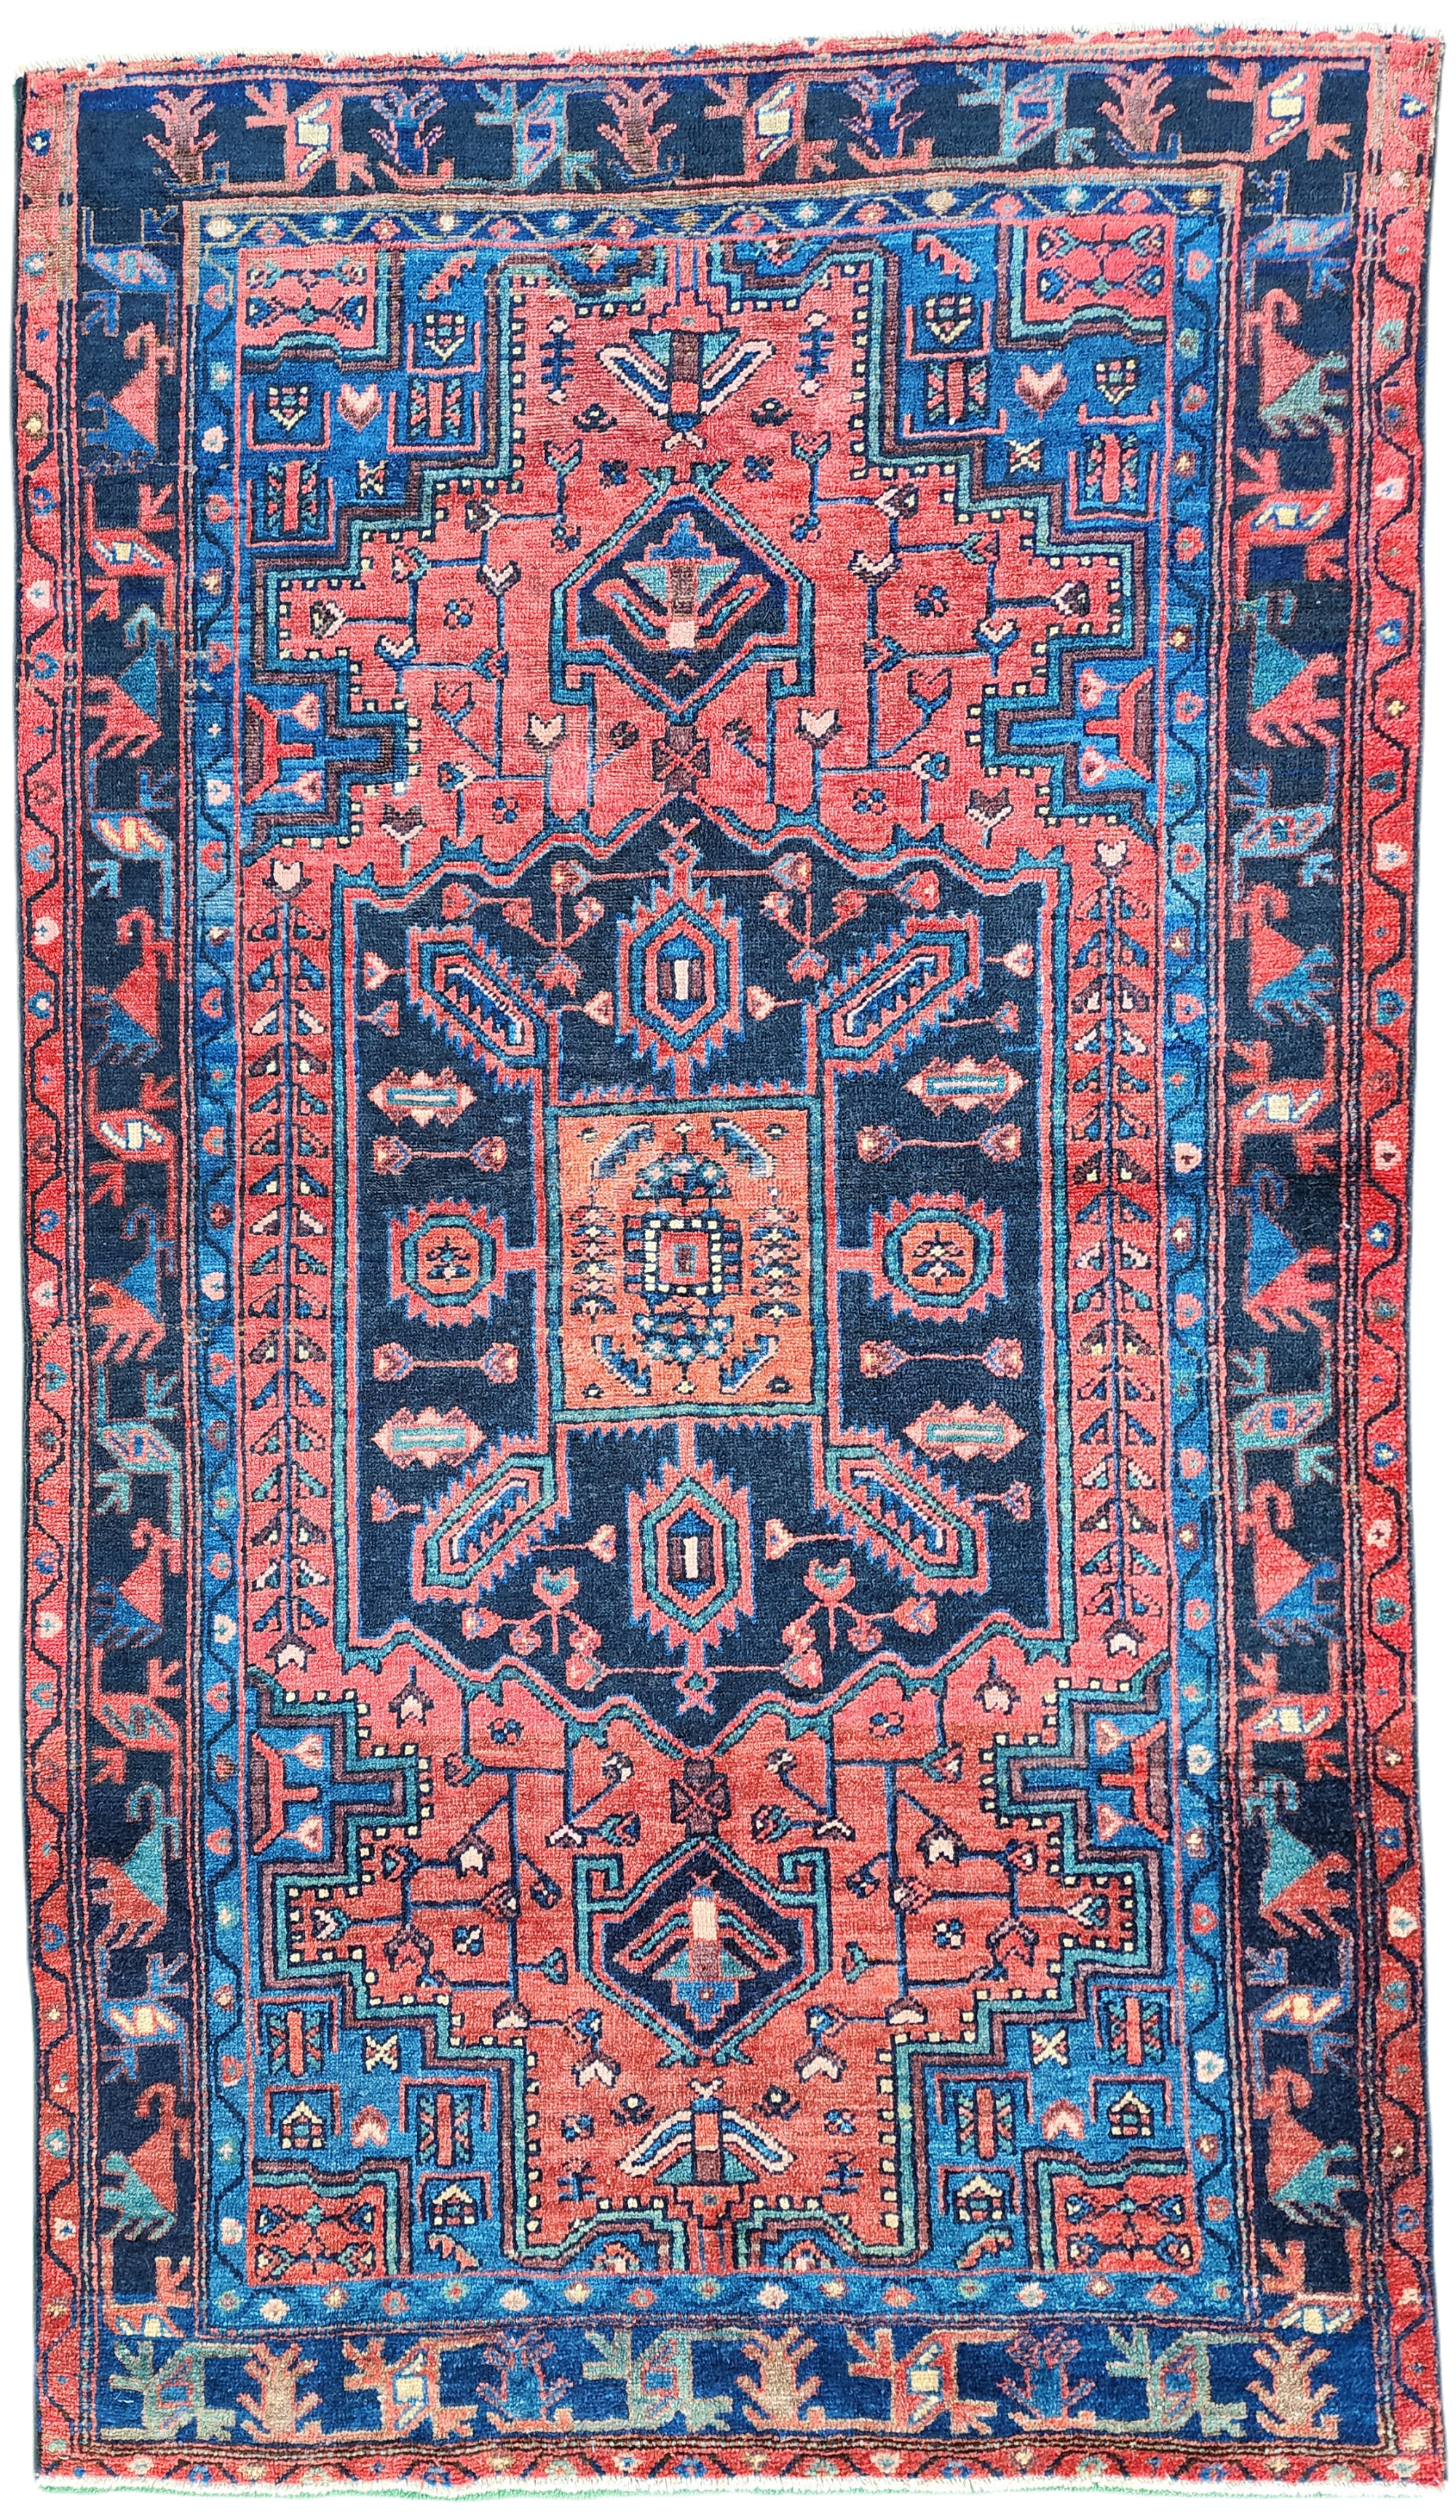 Vintage Persian Area Rug 6'7"x4'3"